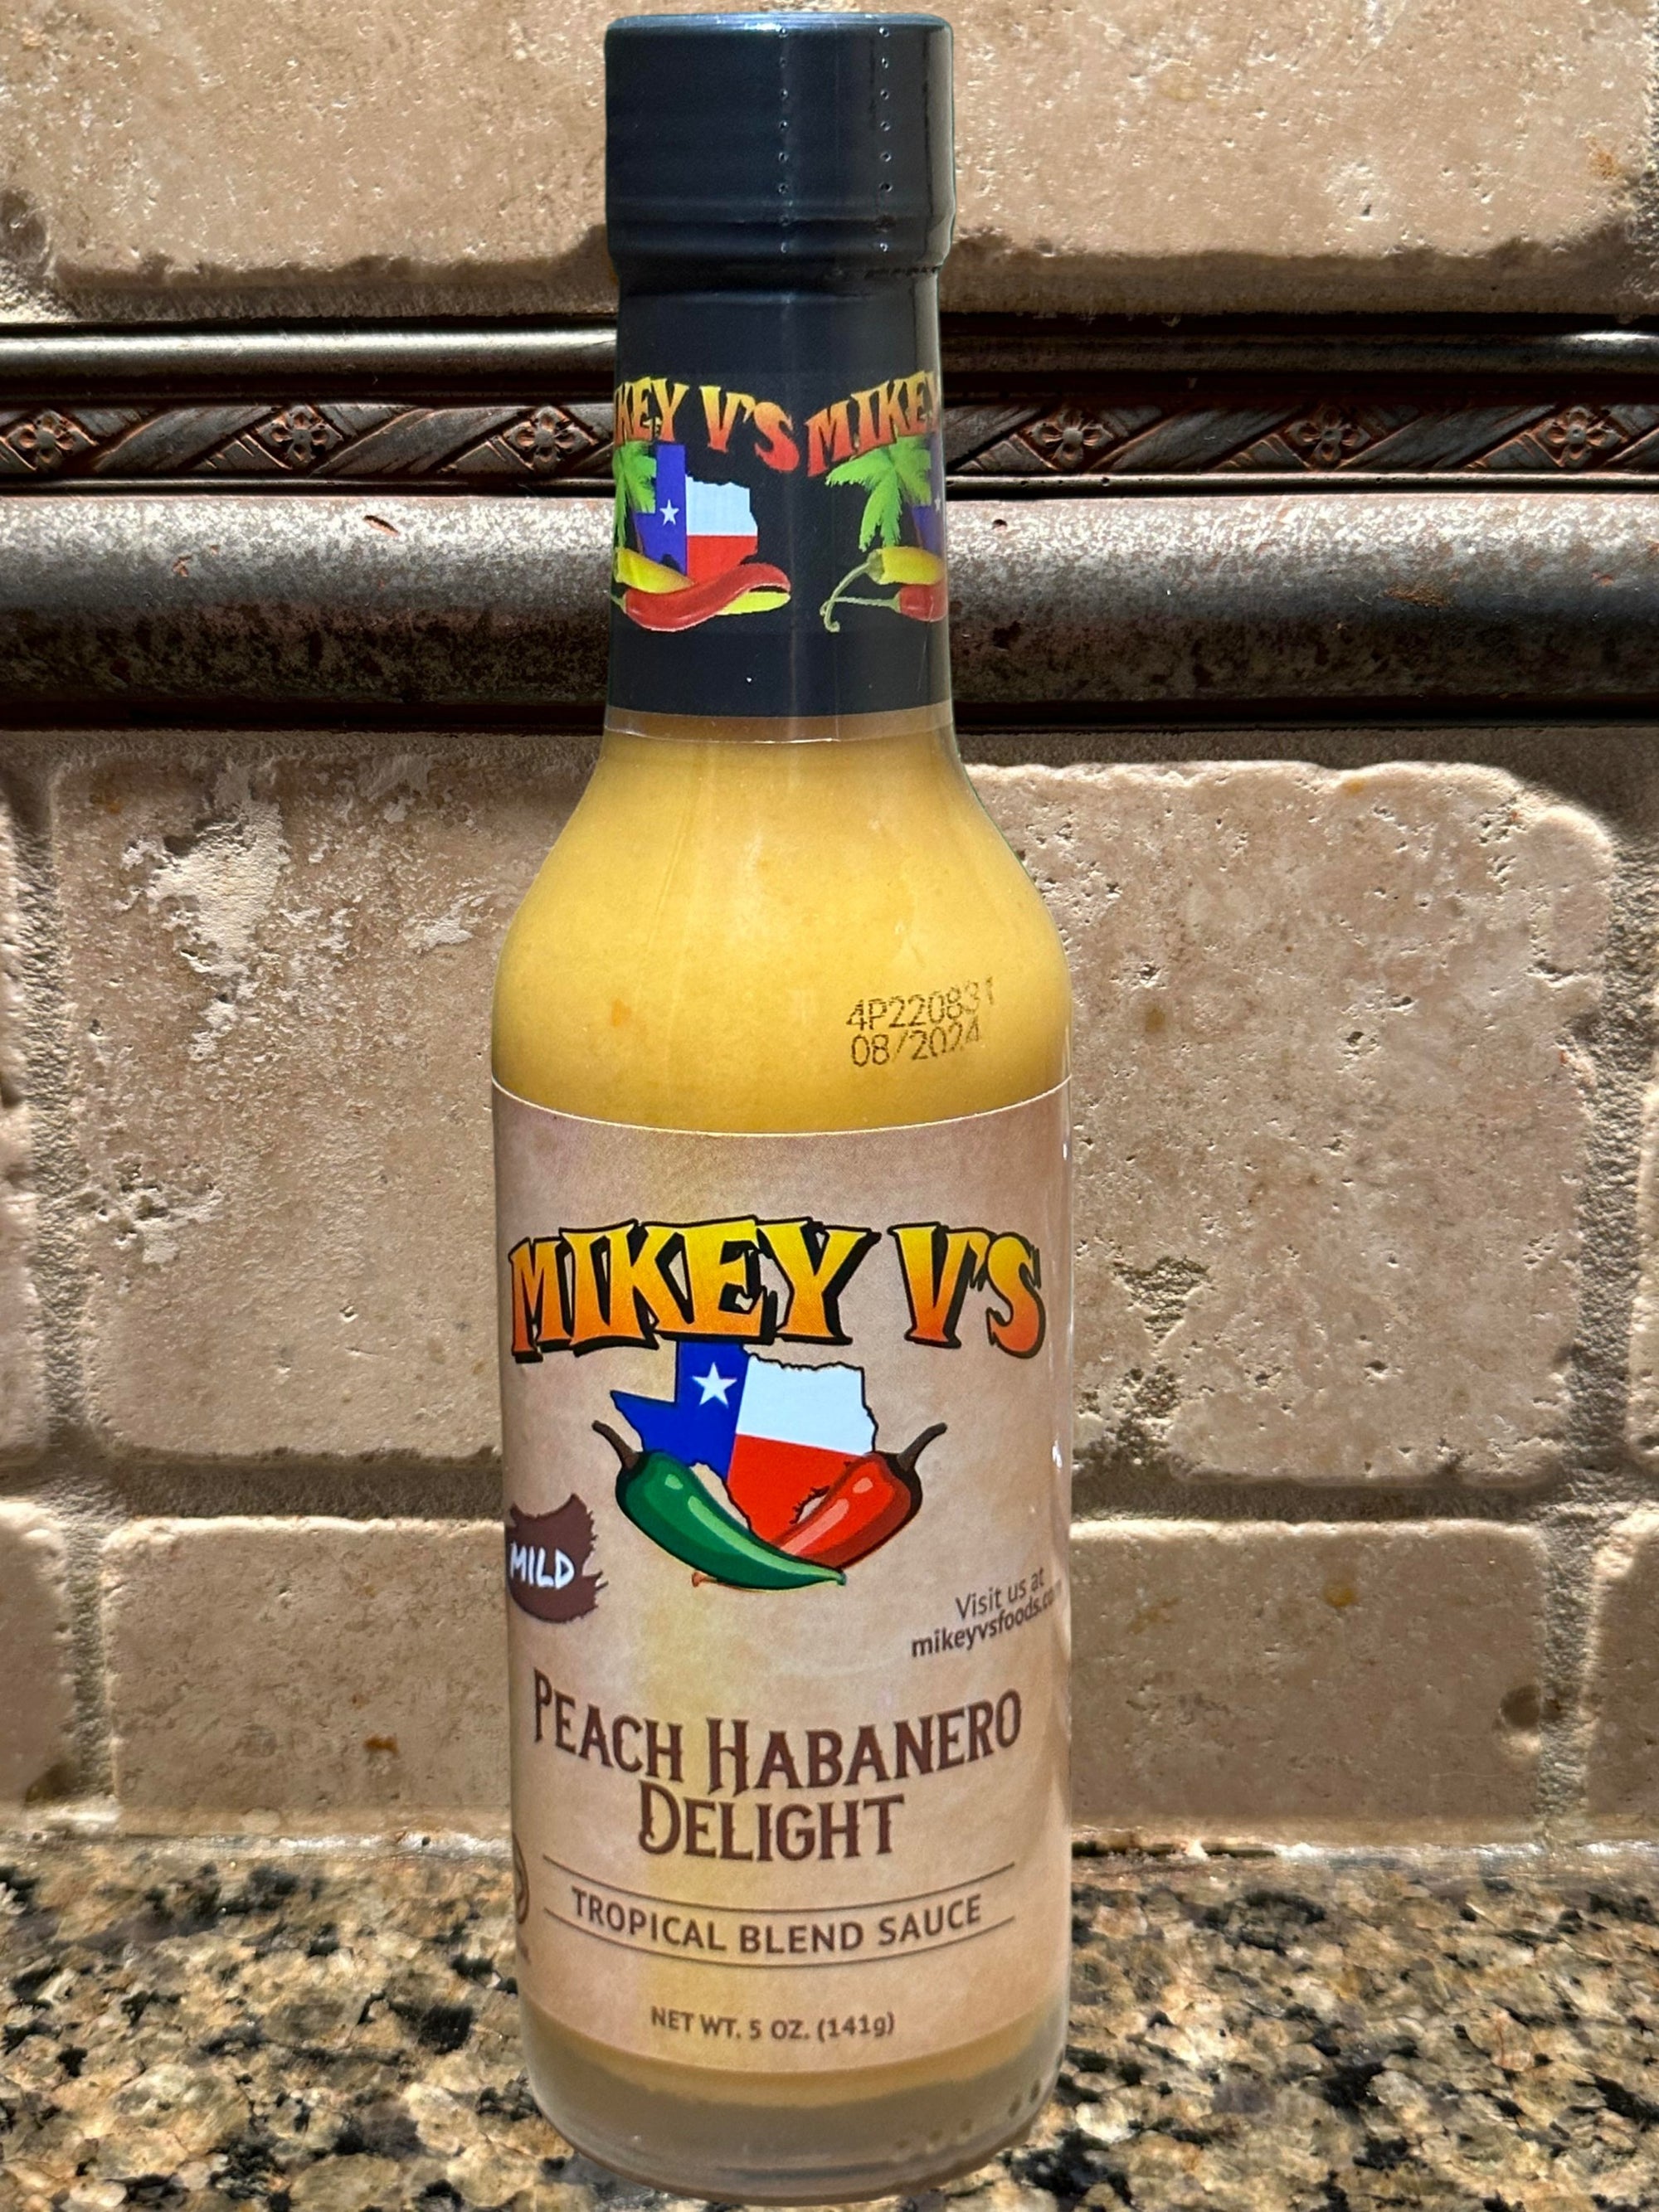 Mikey V's Peach Habanero Delight Hot Sauce